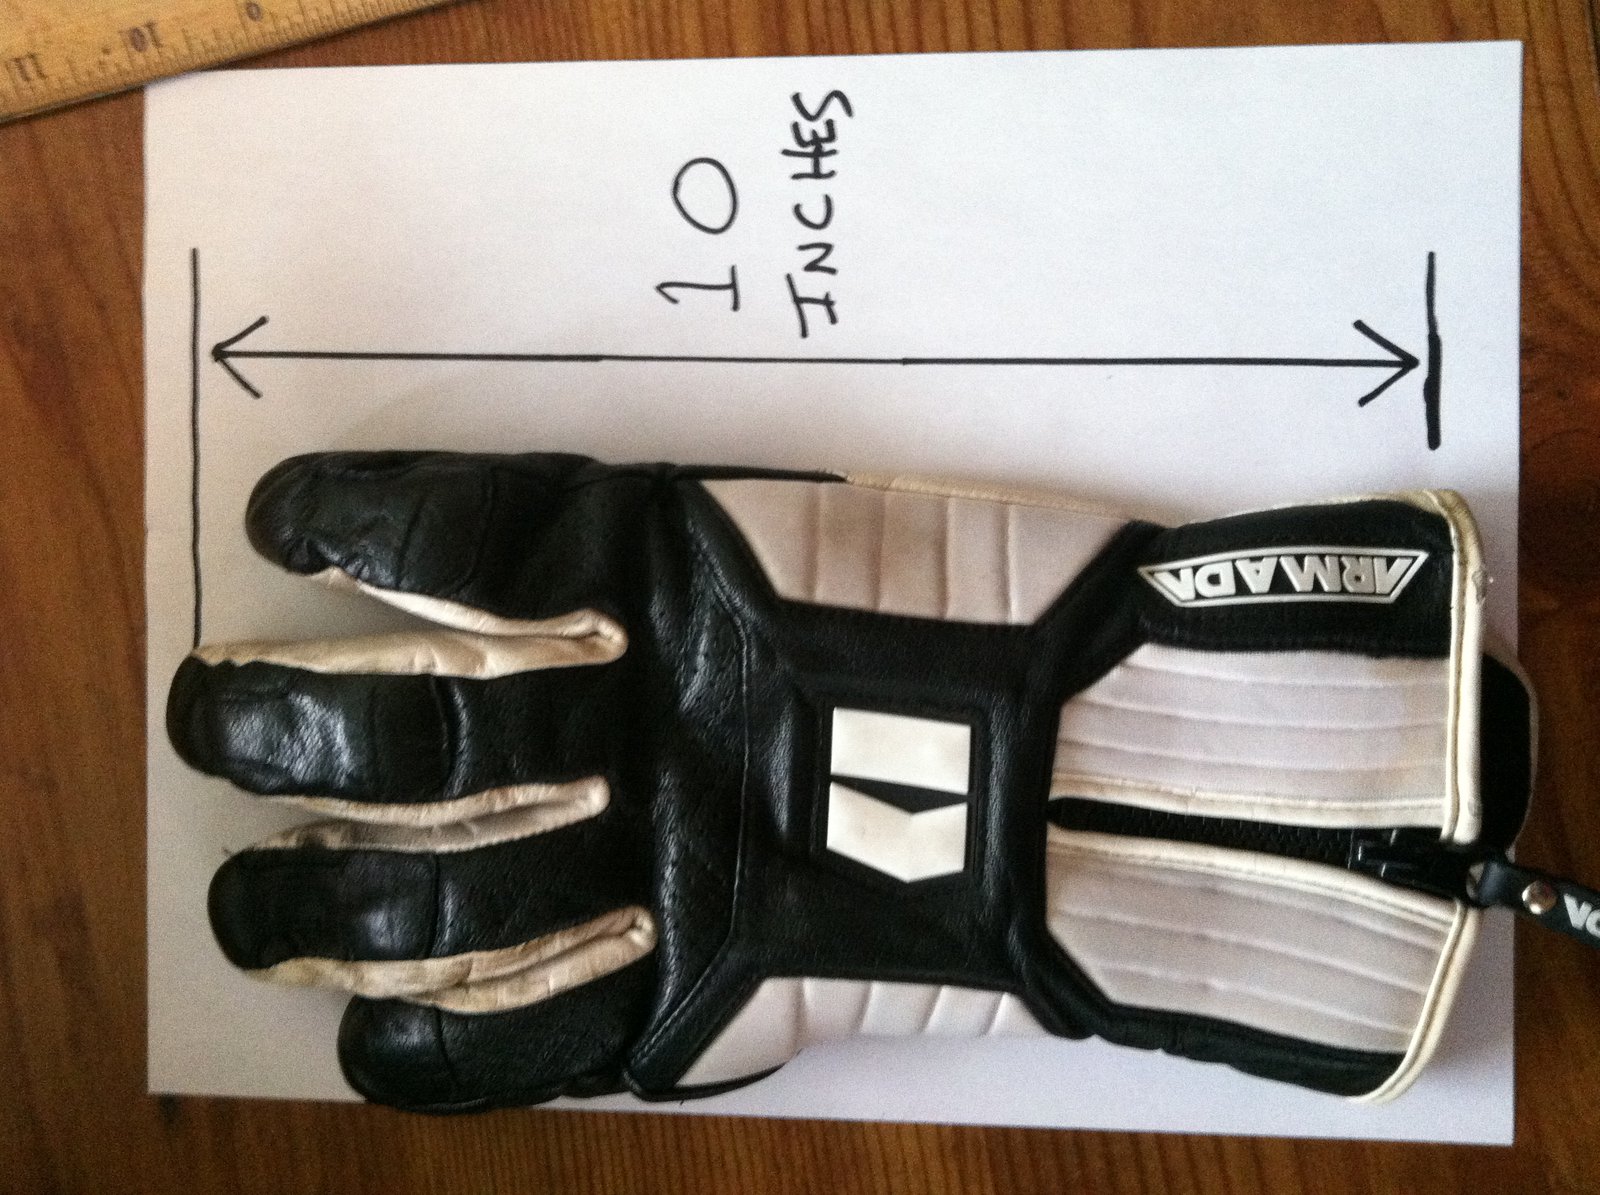 glove size